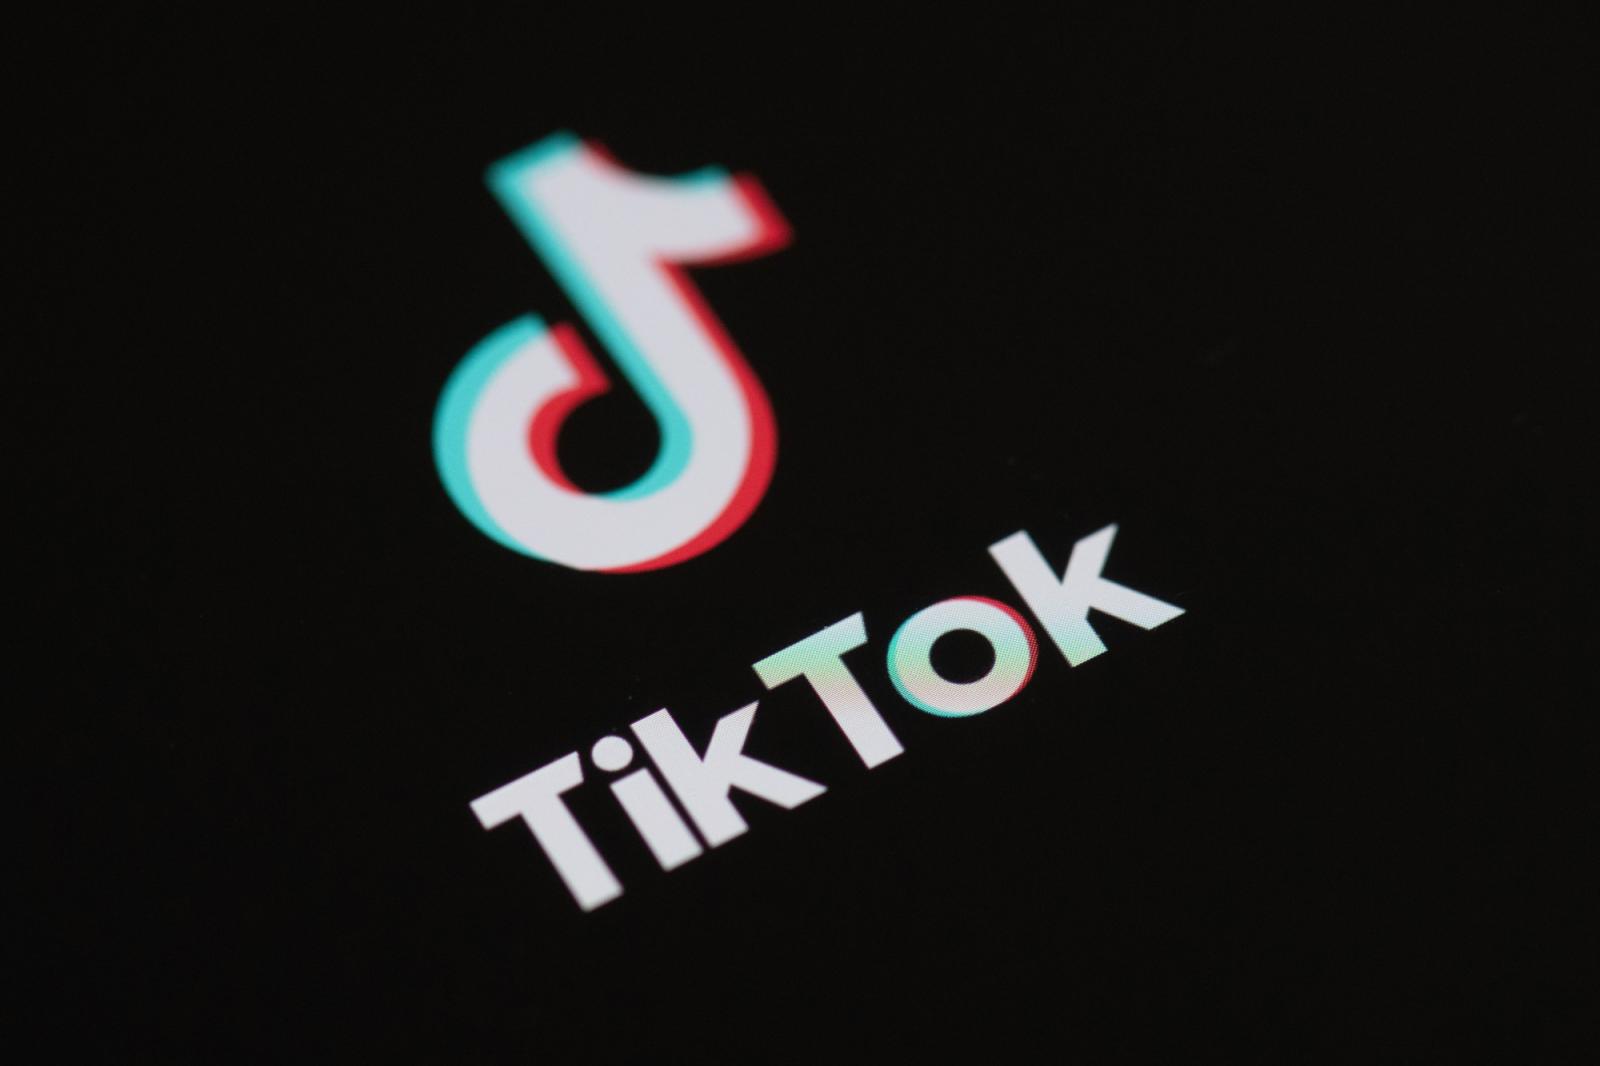 SÉNÉGAL : Pourquoi Restic a décidé de déposer une plainte contre Tiktok